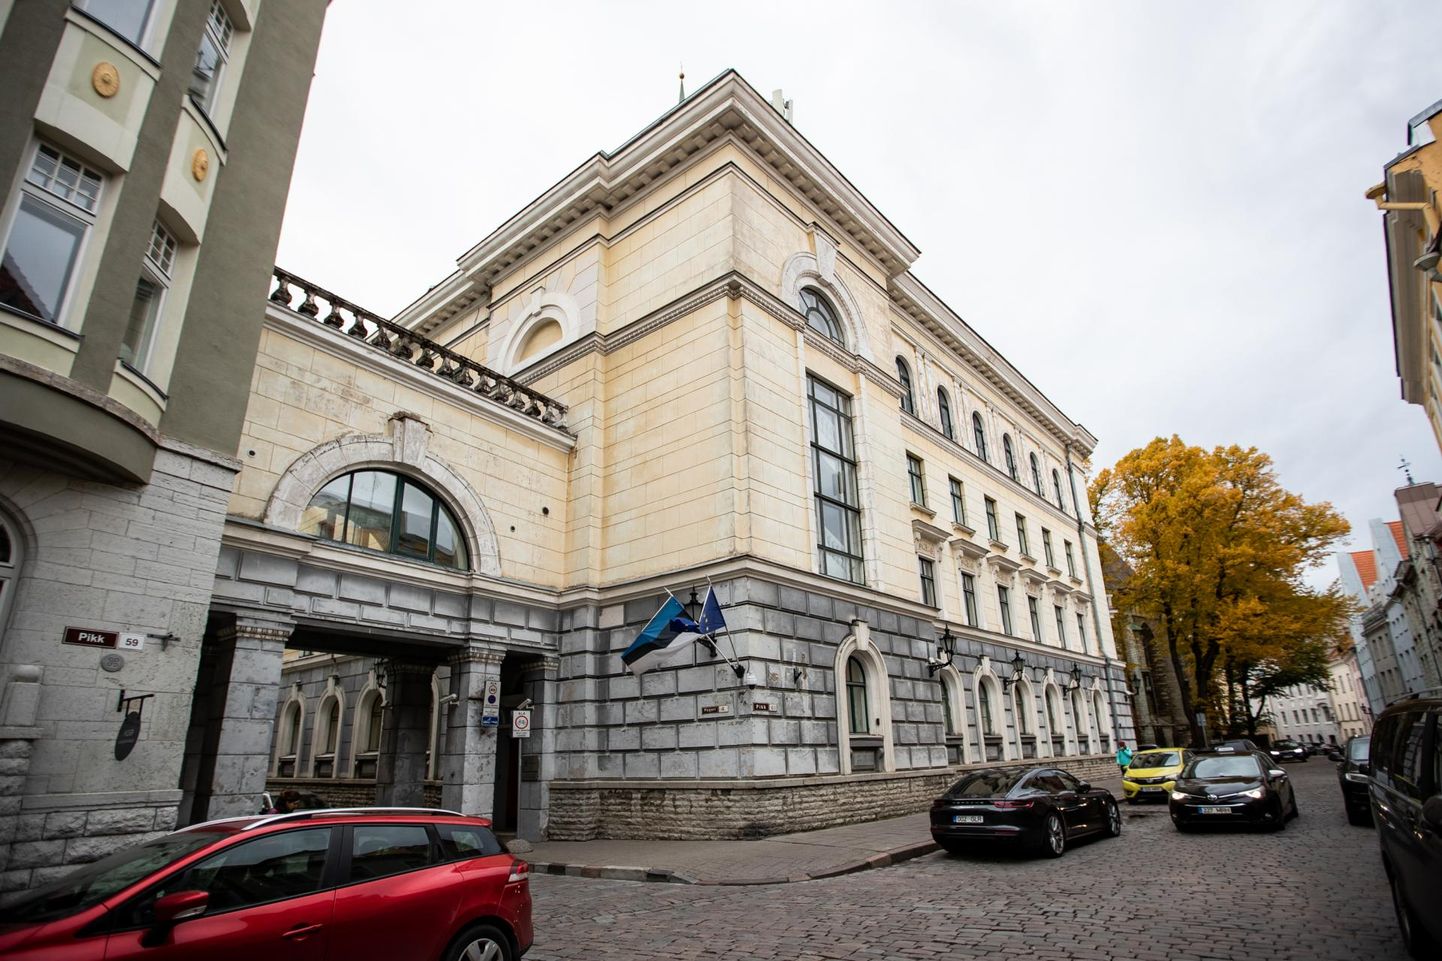 Здание Министерства внутренних дел на улице Пикк в Таллинне, по словам хозяина дома Марта Хелмье, никуда не годится. Для строительства нового дома, как он считает, можно было бы задействовать частный сектор.